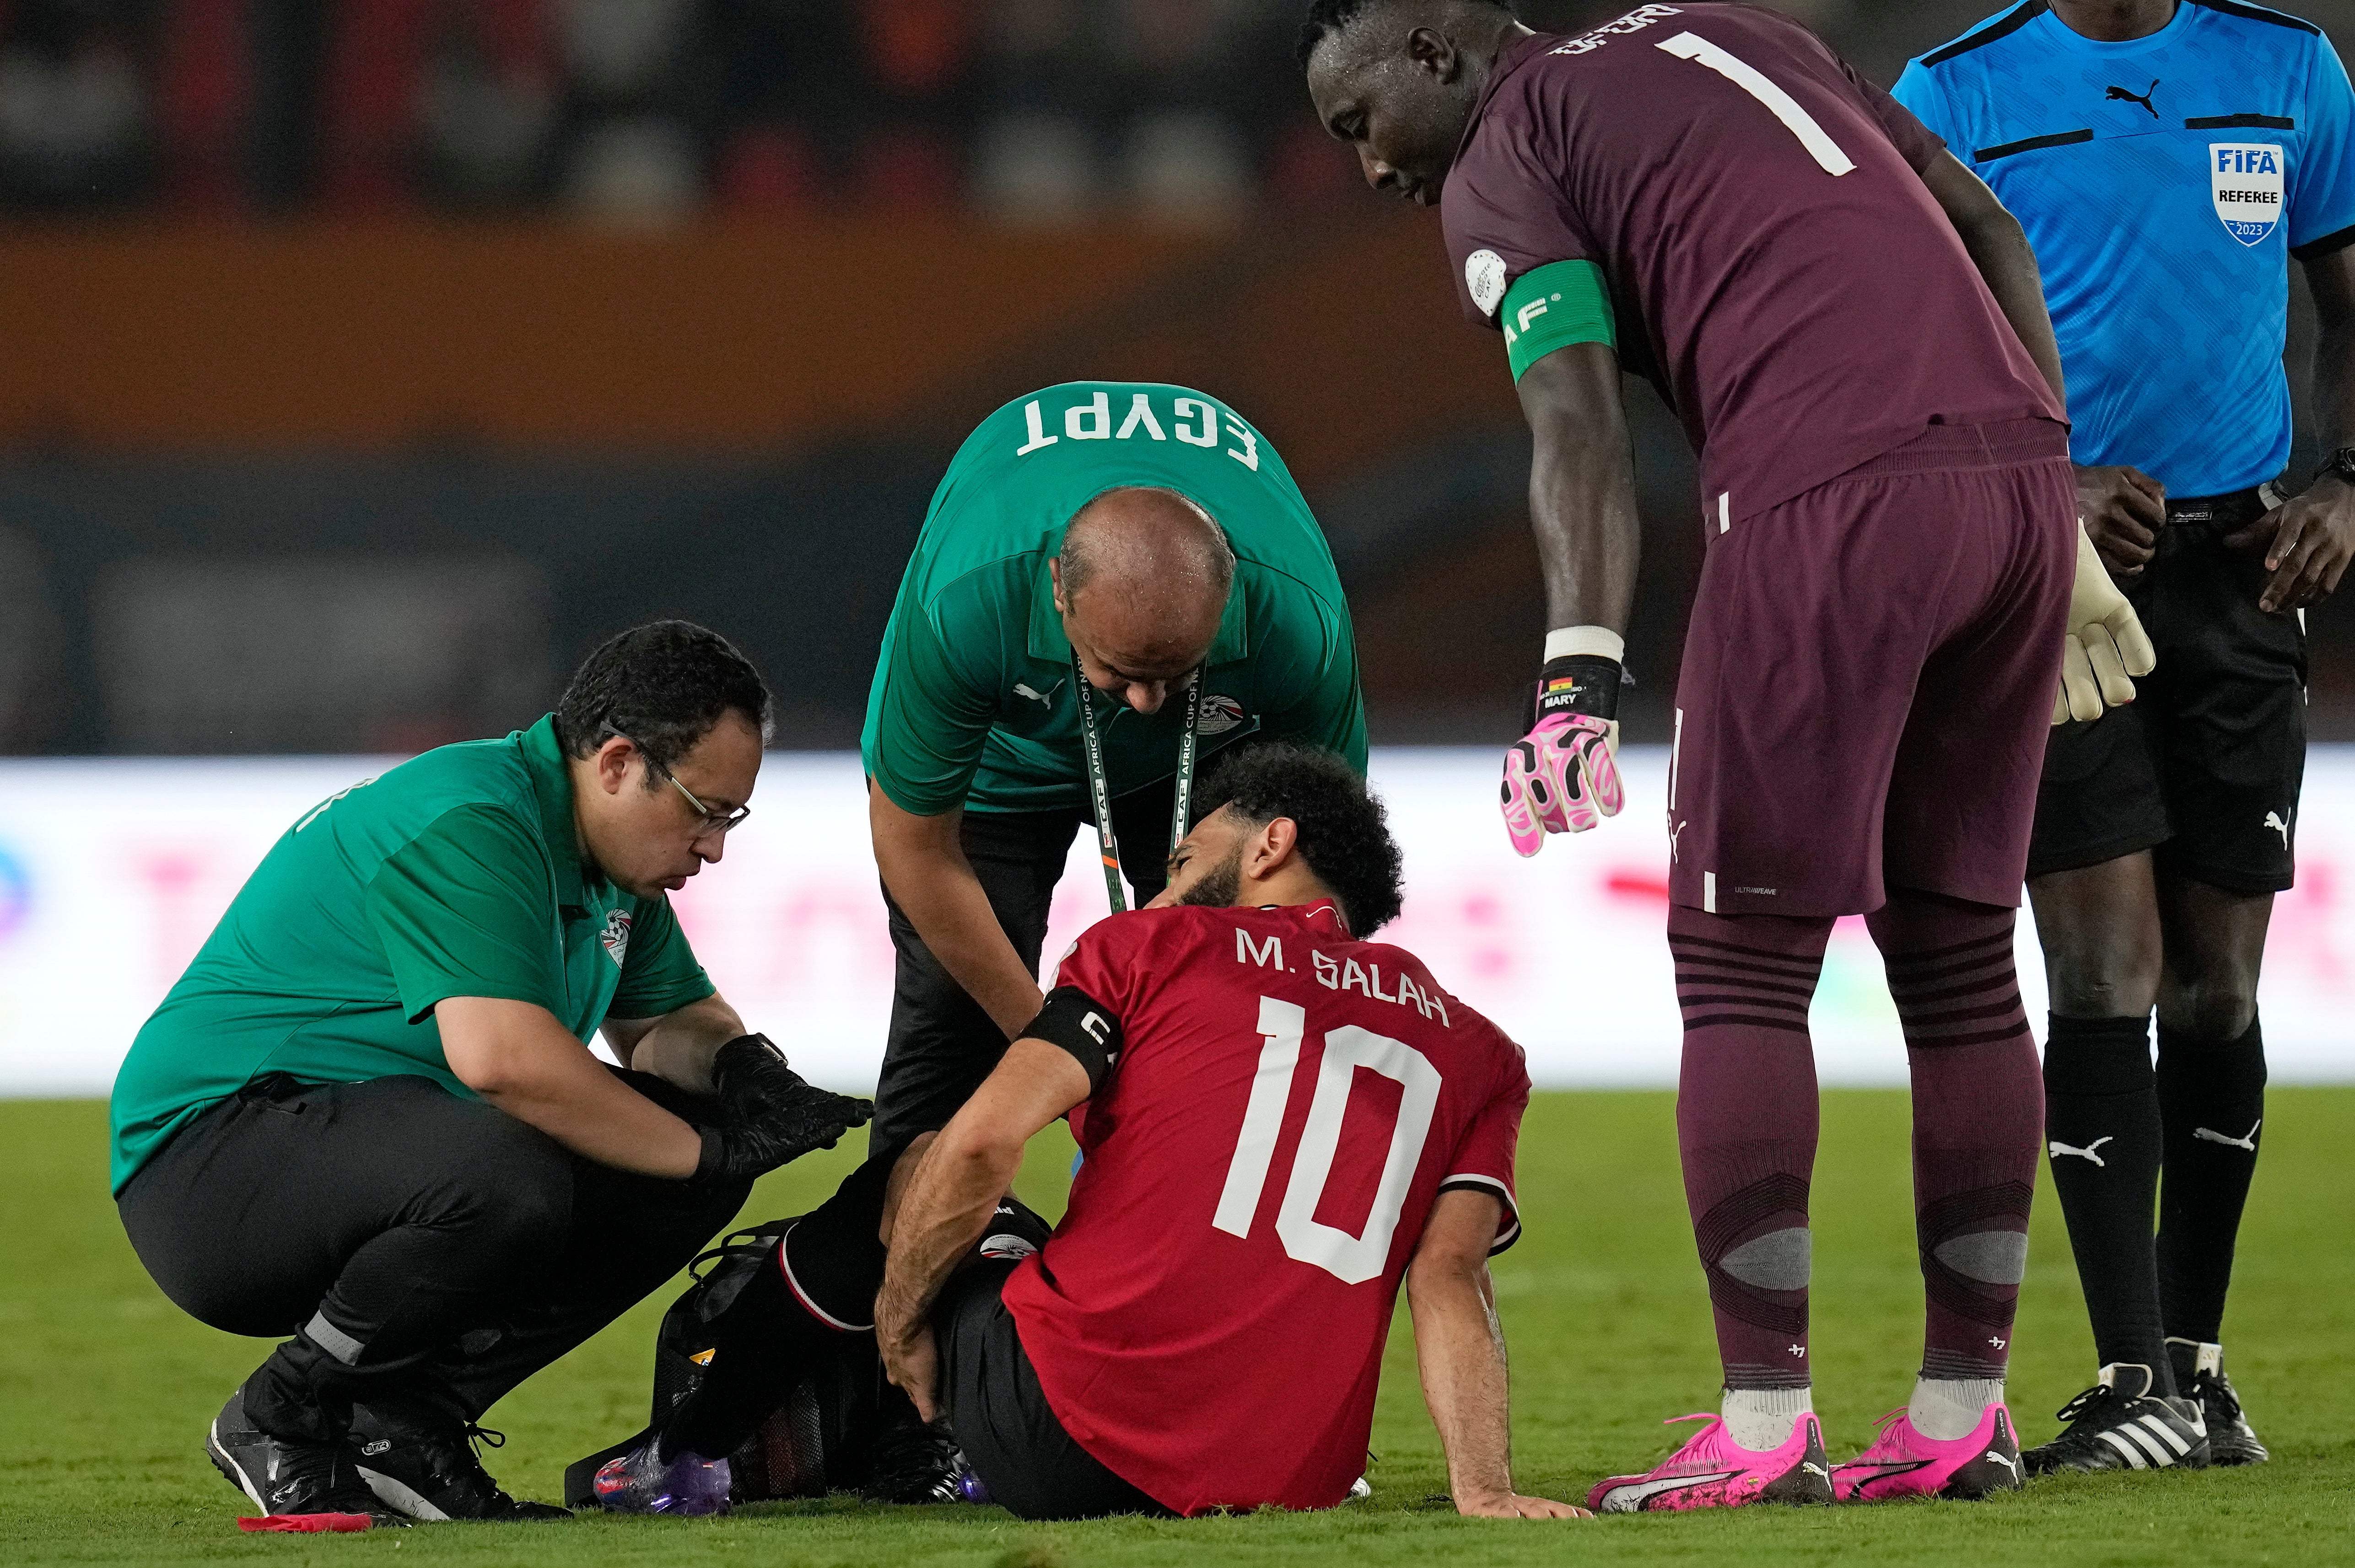 Egypt's Mohamed Salah receives medical treatment